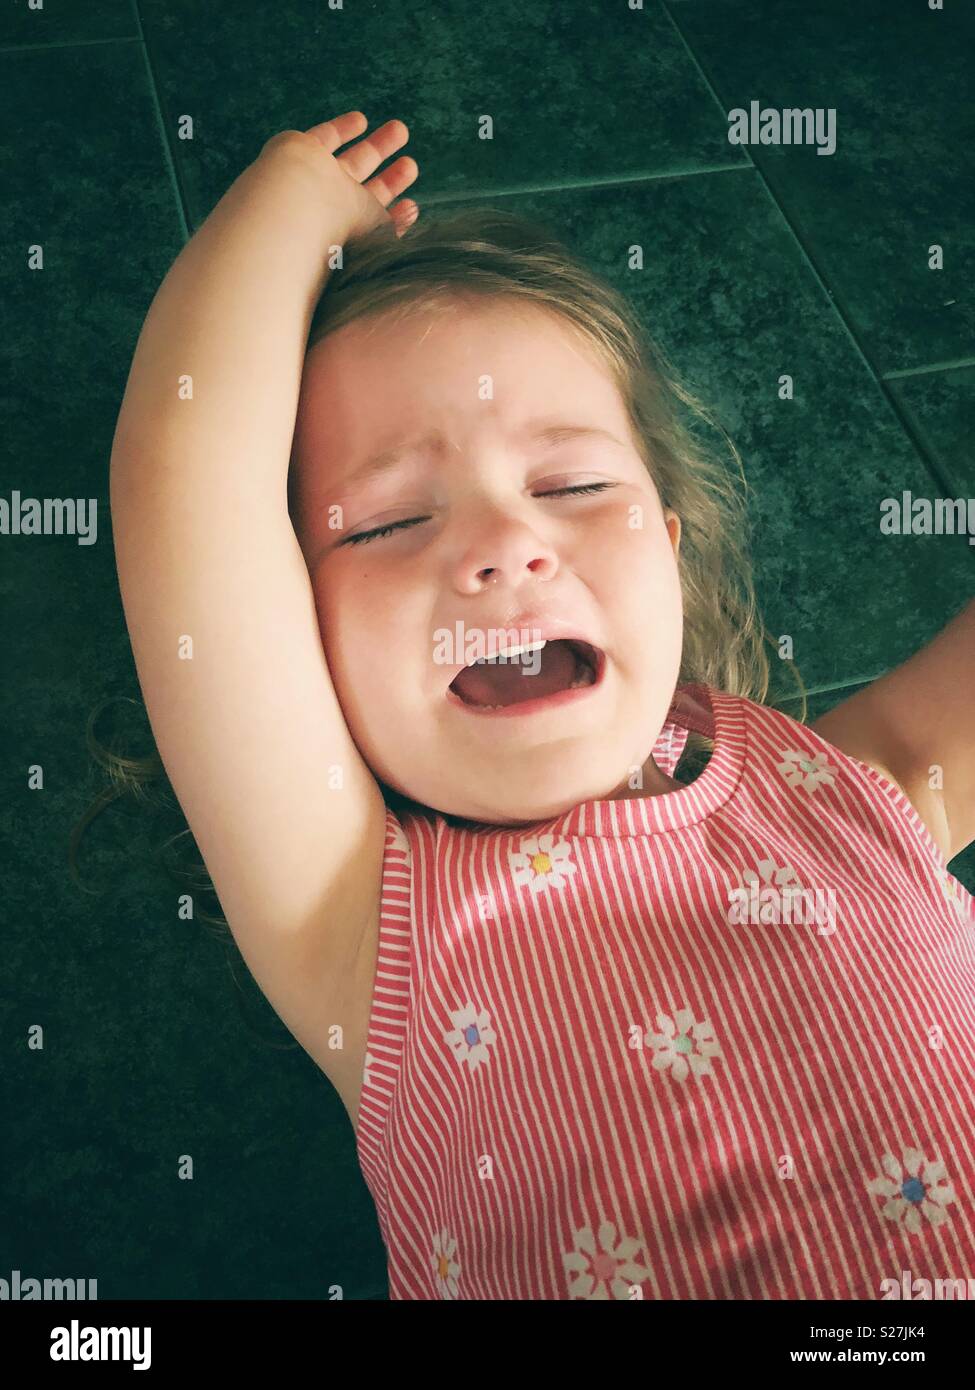 Toddler girl having a temper tantrum on tile floor Stock Photo